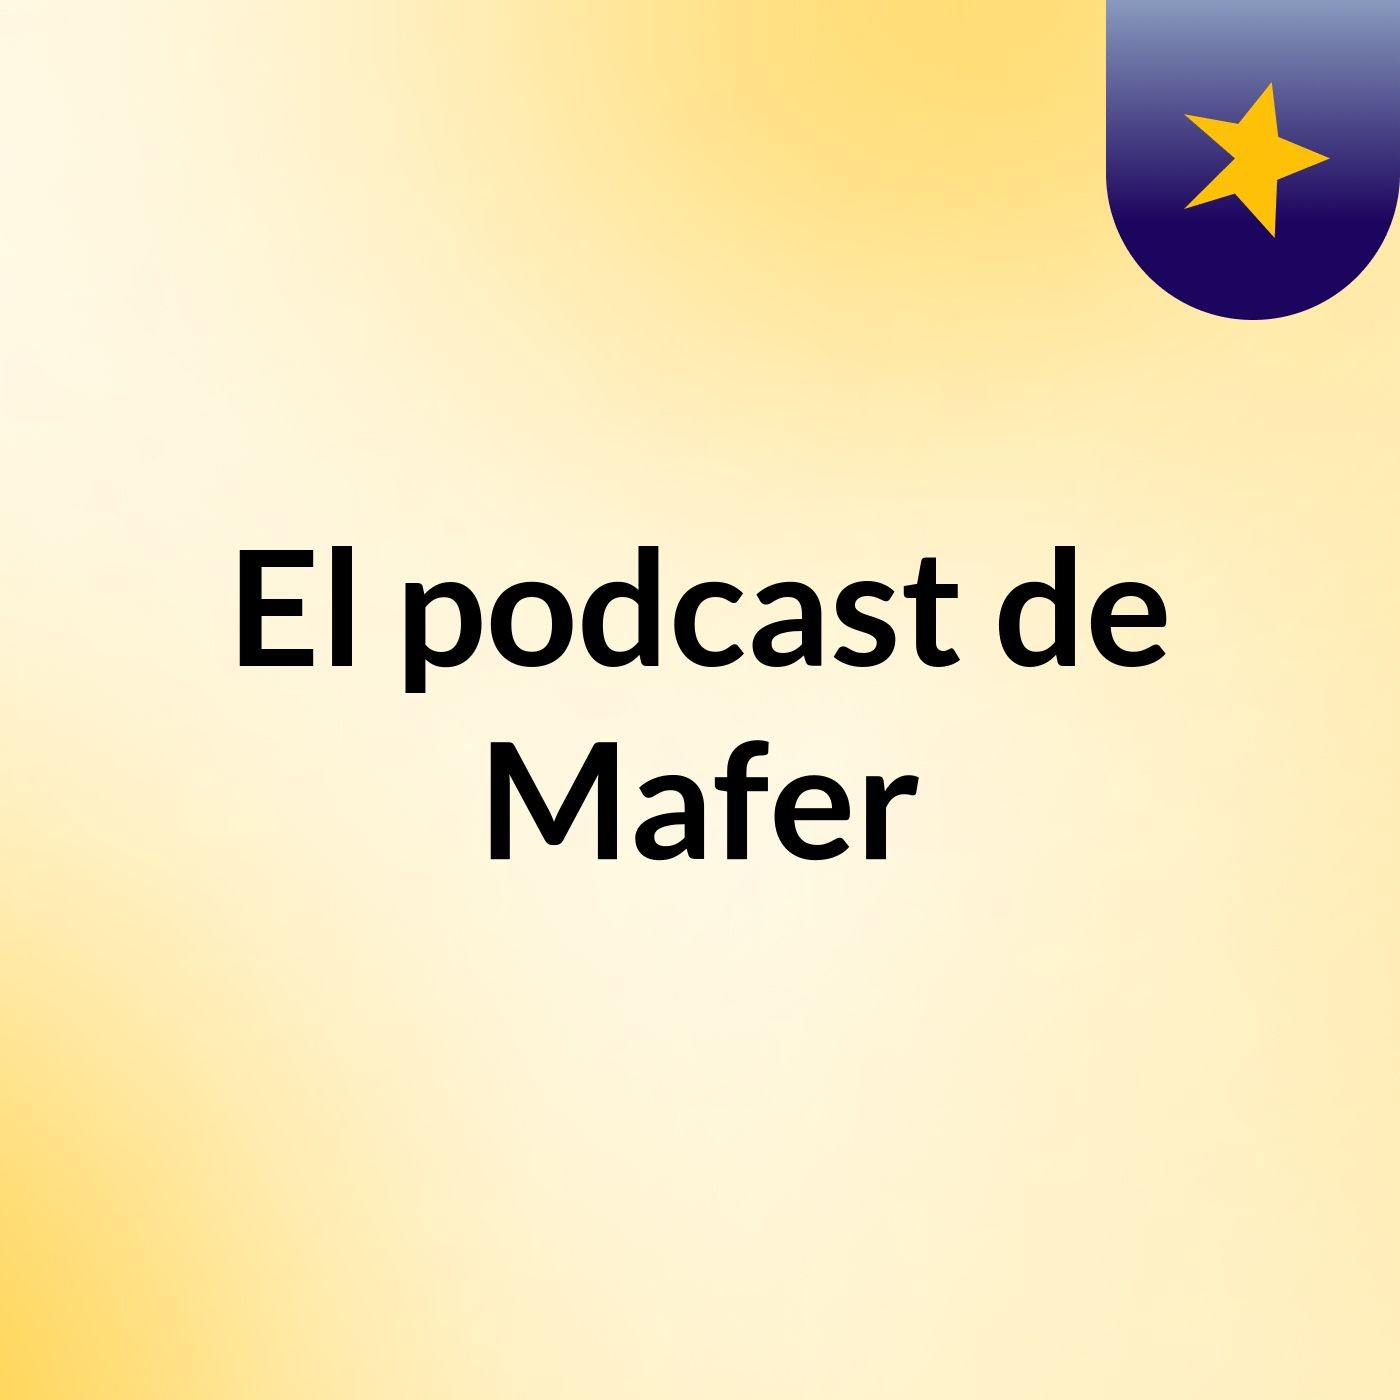 Episodio 5 - El podcast de Mafer